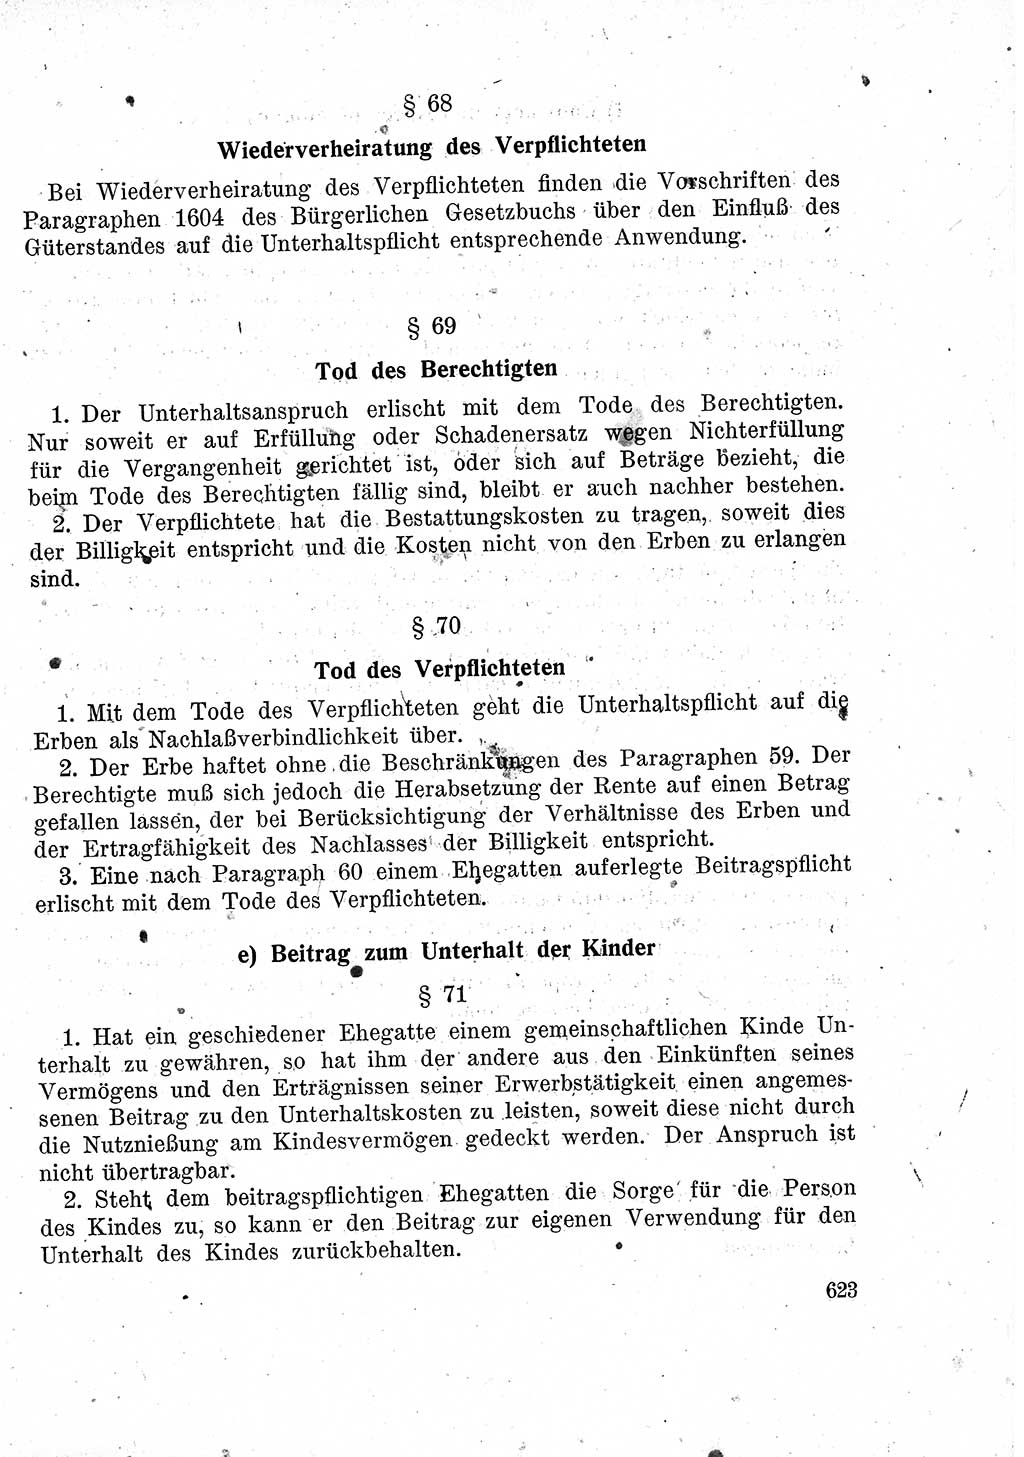 Das Recht der Besatzungsmacht (Deutschland), Proklamationen, Deklerationen, Verordnungen, Gesetze und Bekanntmachungen 1947, Seite 623 (R. Bes. Dtl. 1947, S. 623)